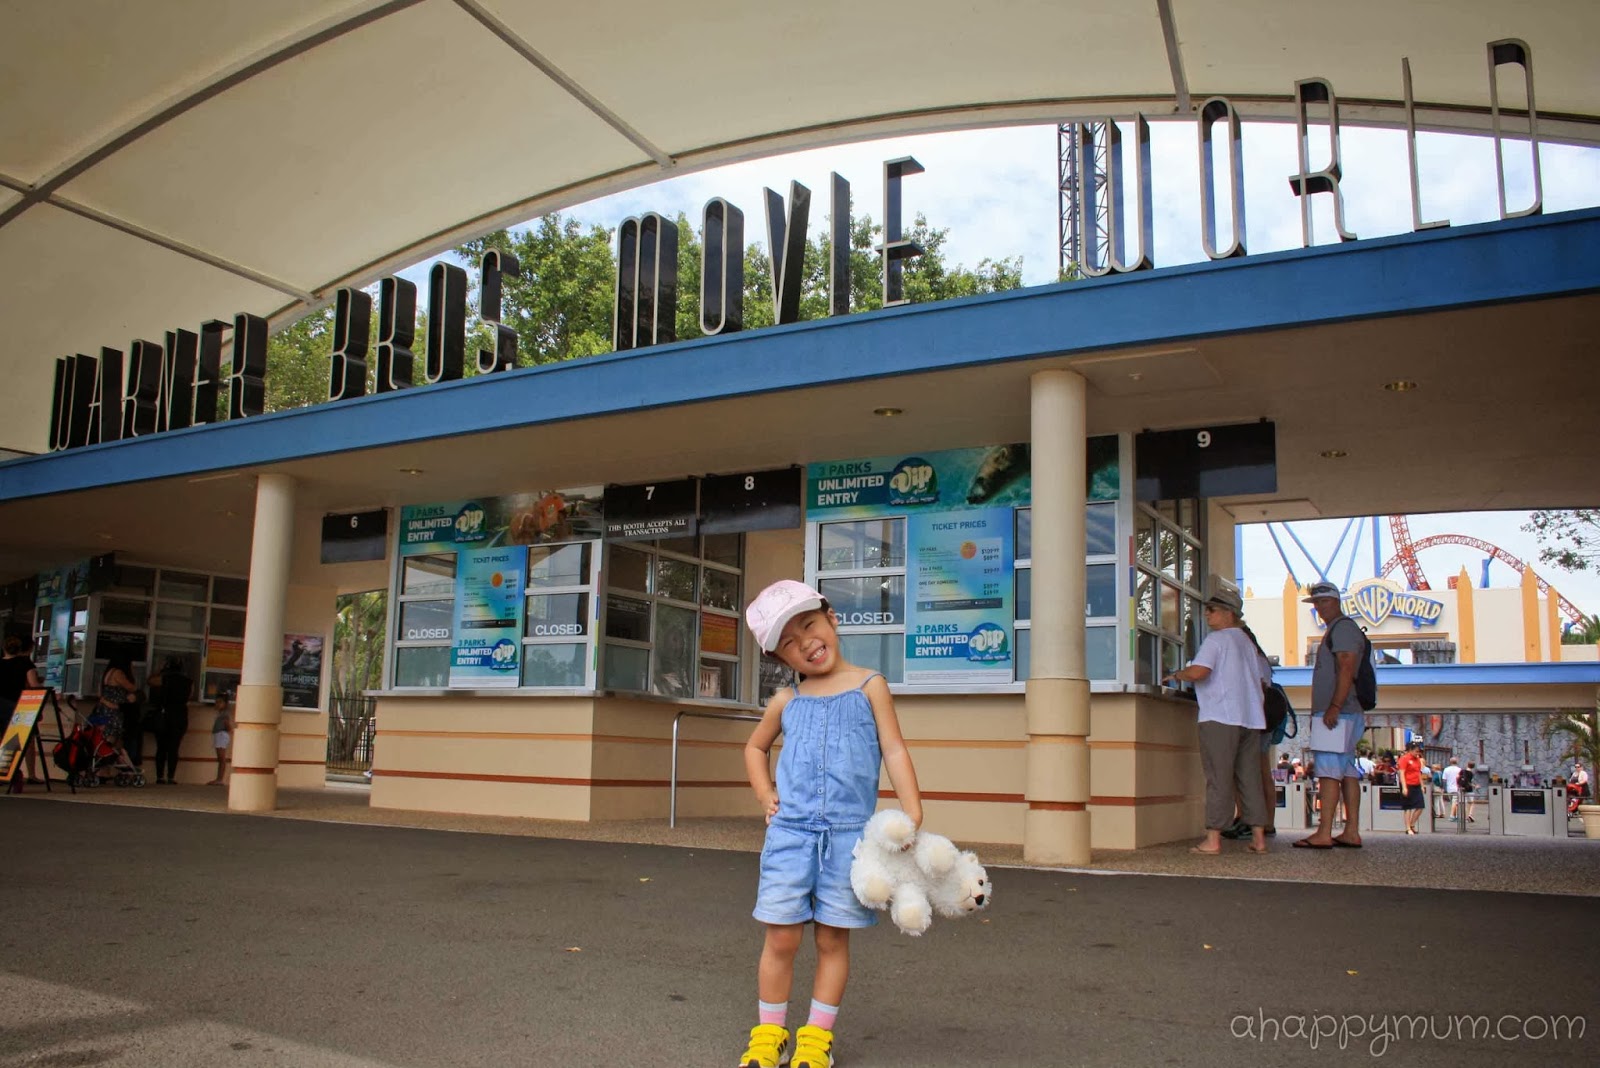 Australia Gold Coast Theme Parks - Tour Architect